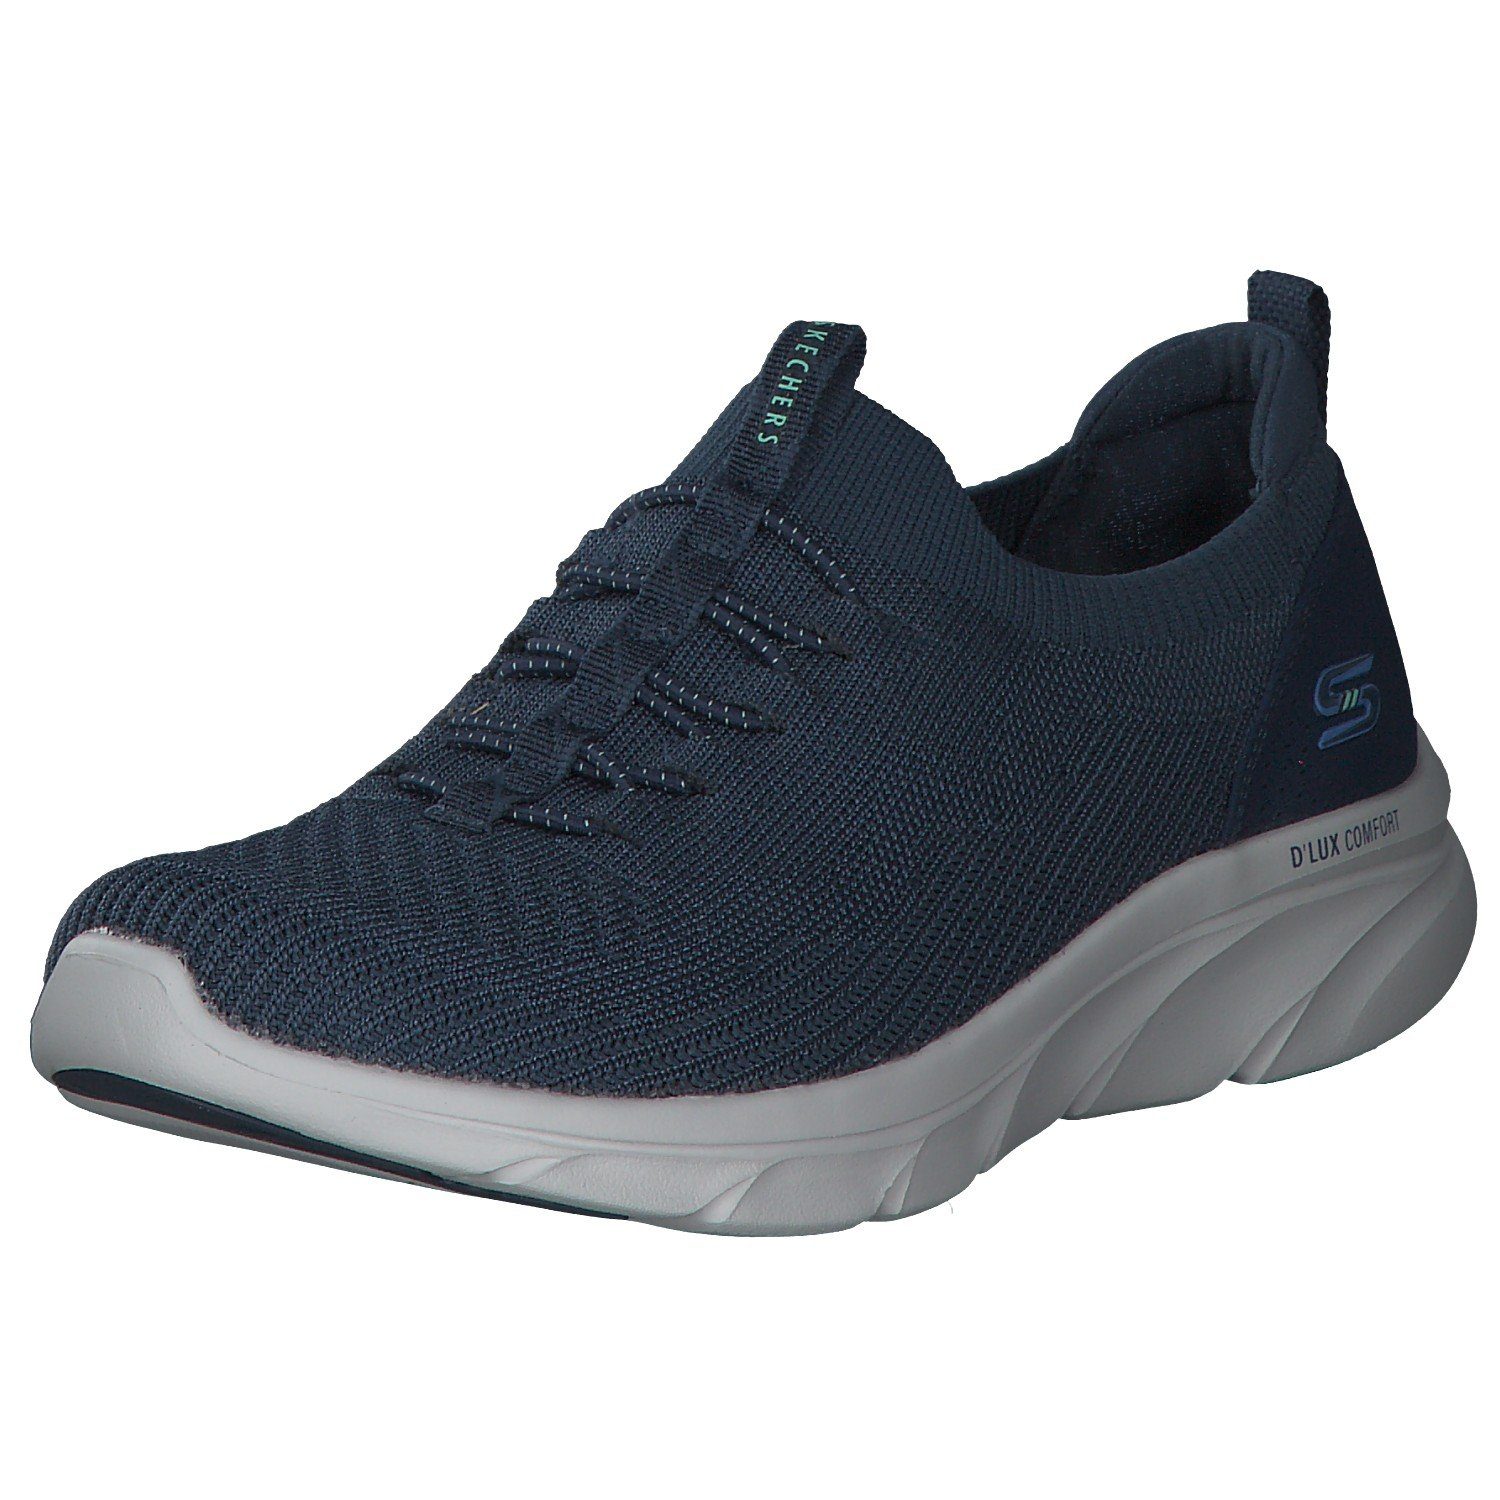 Sneaker navy blue Skechers 104335 (20202975) Skechers